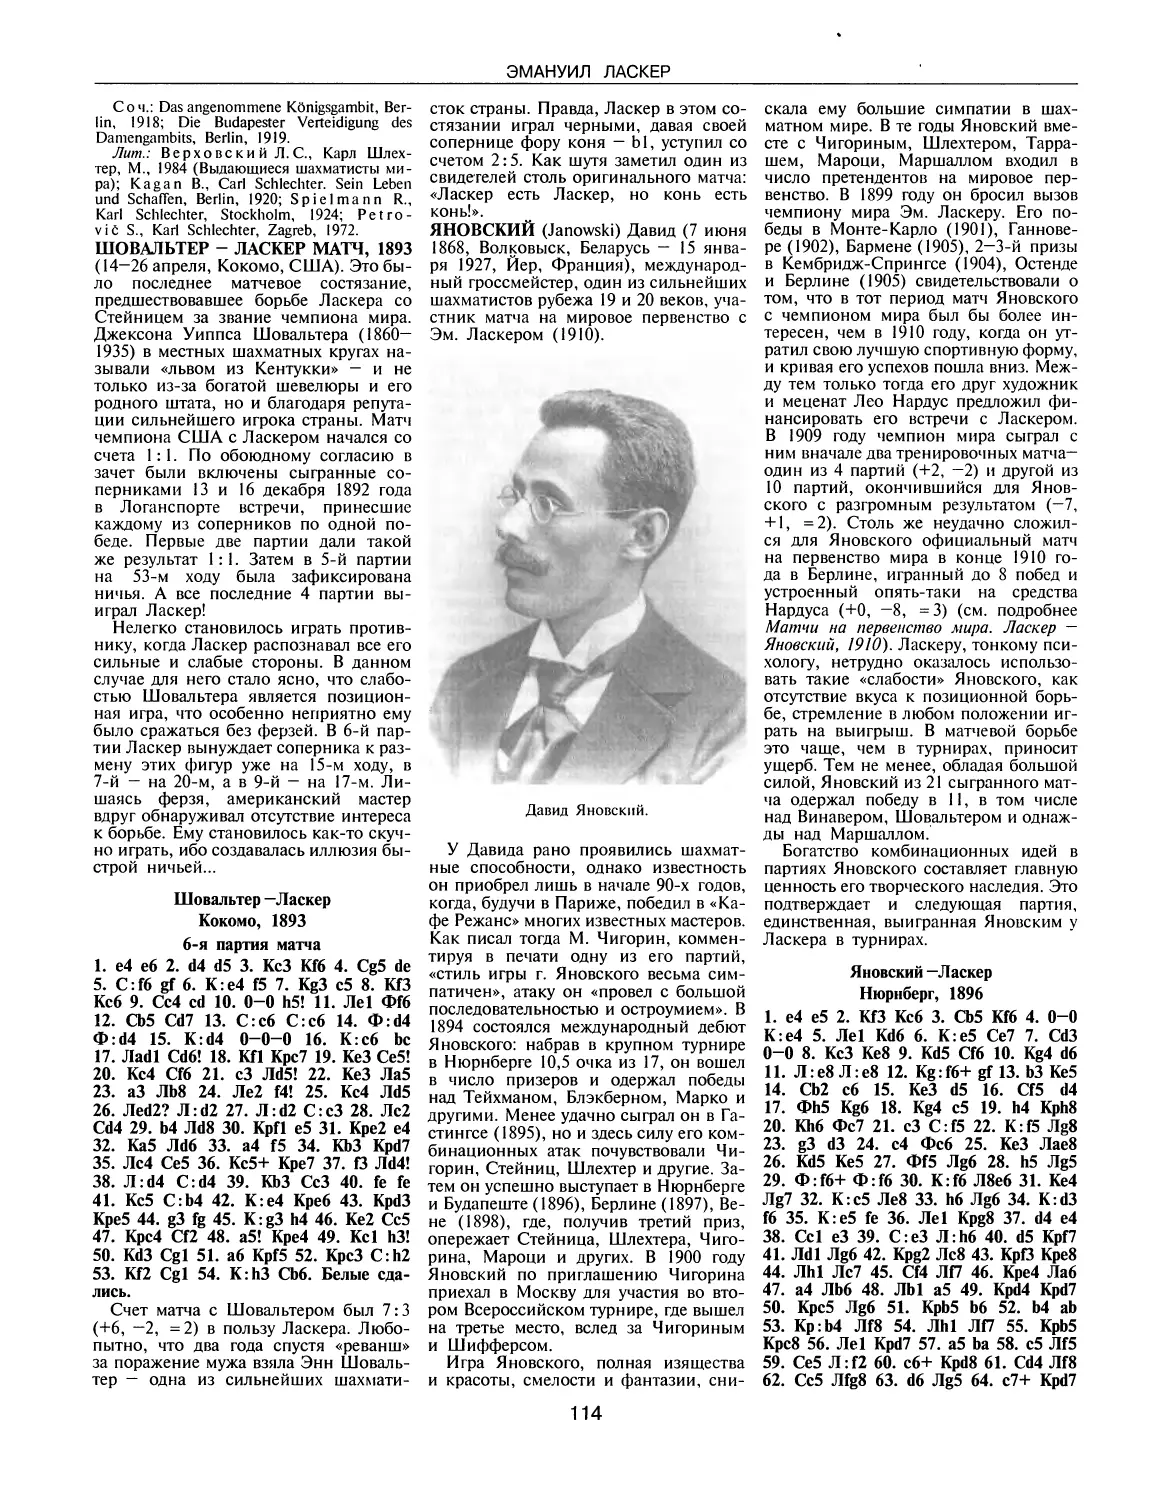 Шовальтер — Ласкер матч, 1893
Яновский Д.